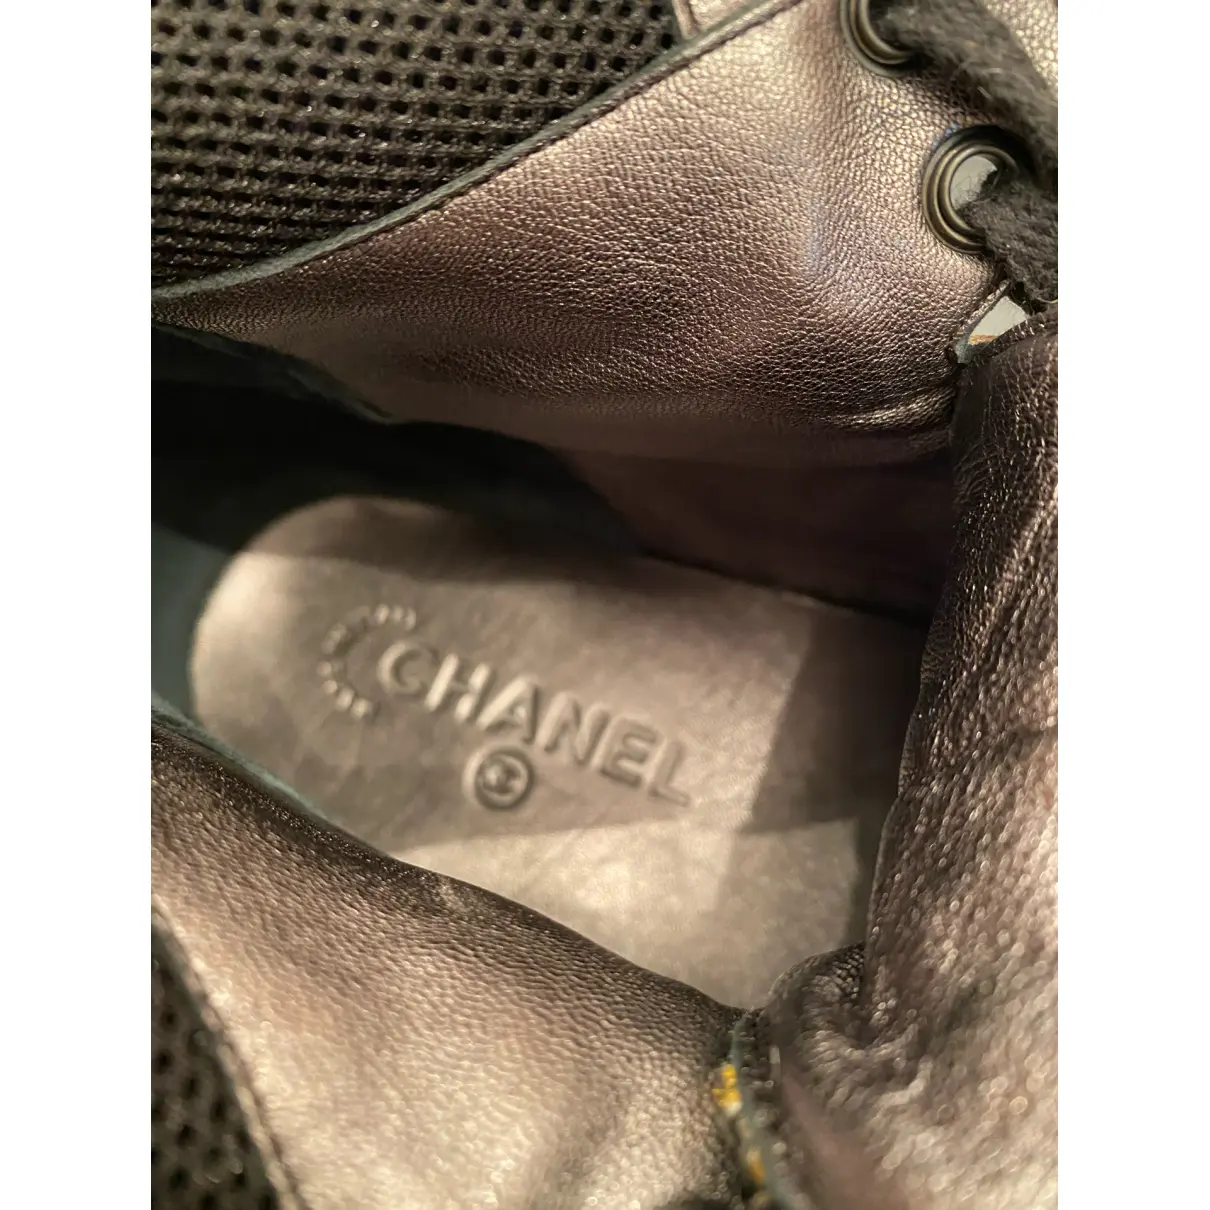 Tweed boots Chanel